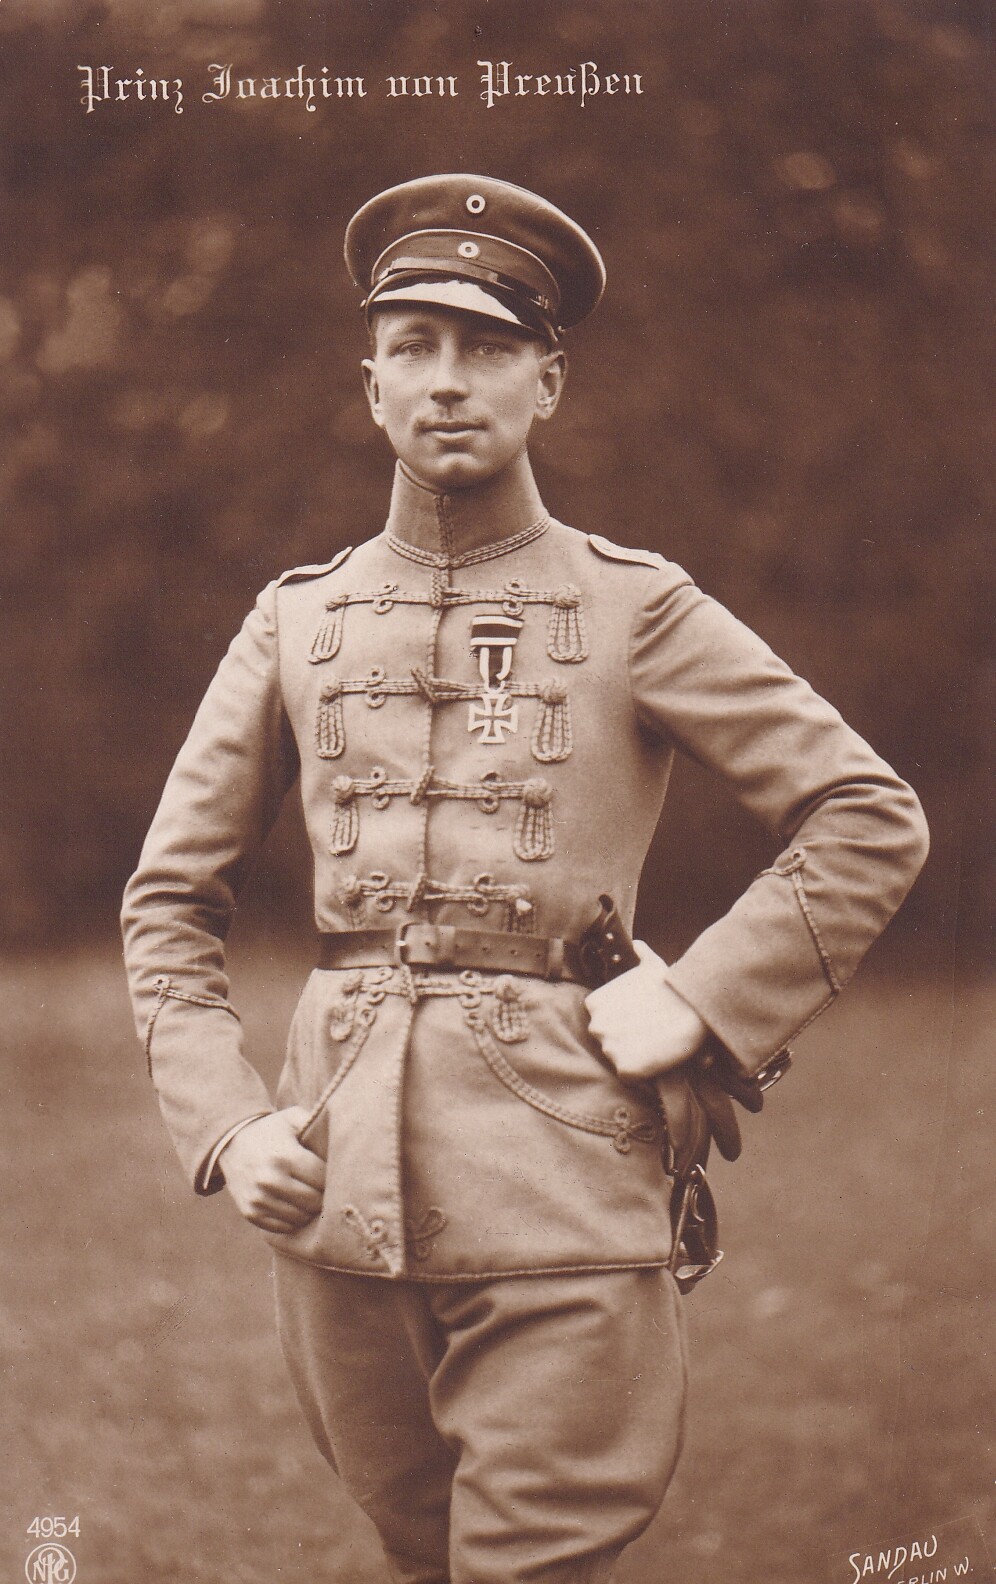 Bildpostkarte mit Foto des Prinzen Joachim von Preußen, 1914 (Schloß Wernigerode GmbH RR-F)